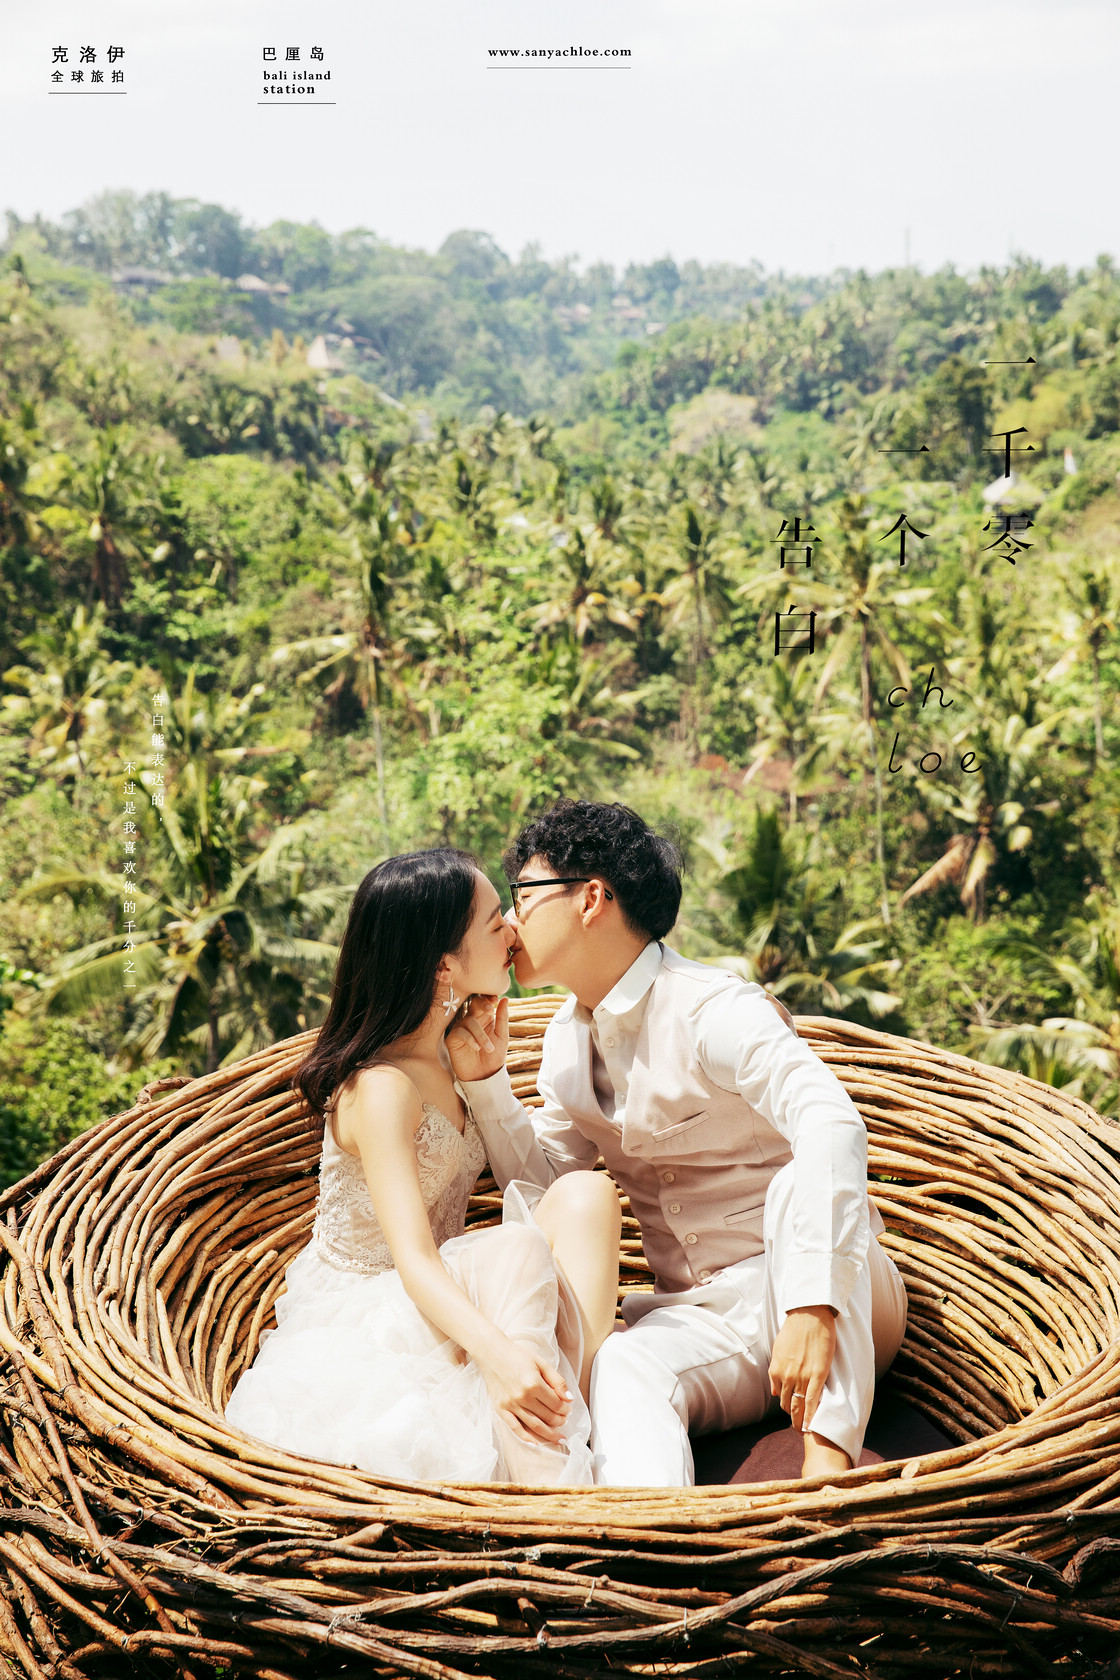 返回首页 > 照片案例 > 巴厘岛宝格丽水上婚礼W&Q